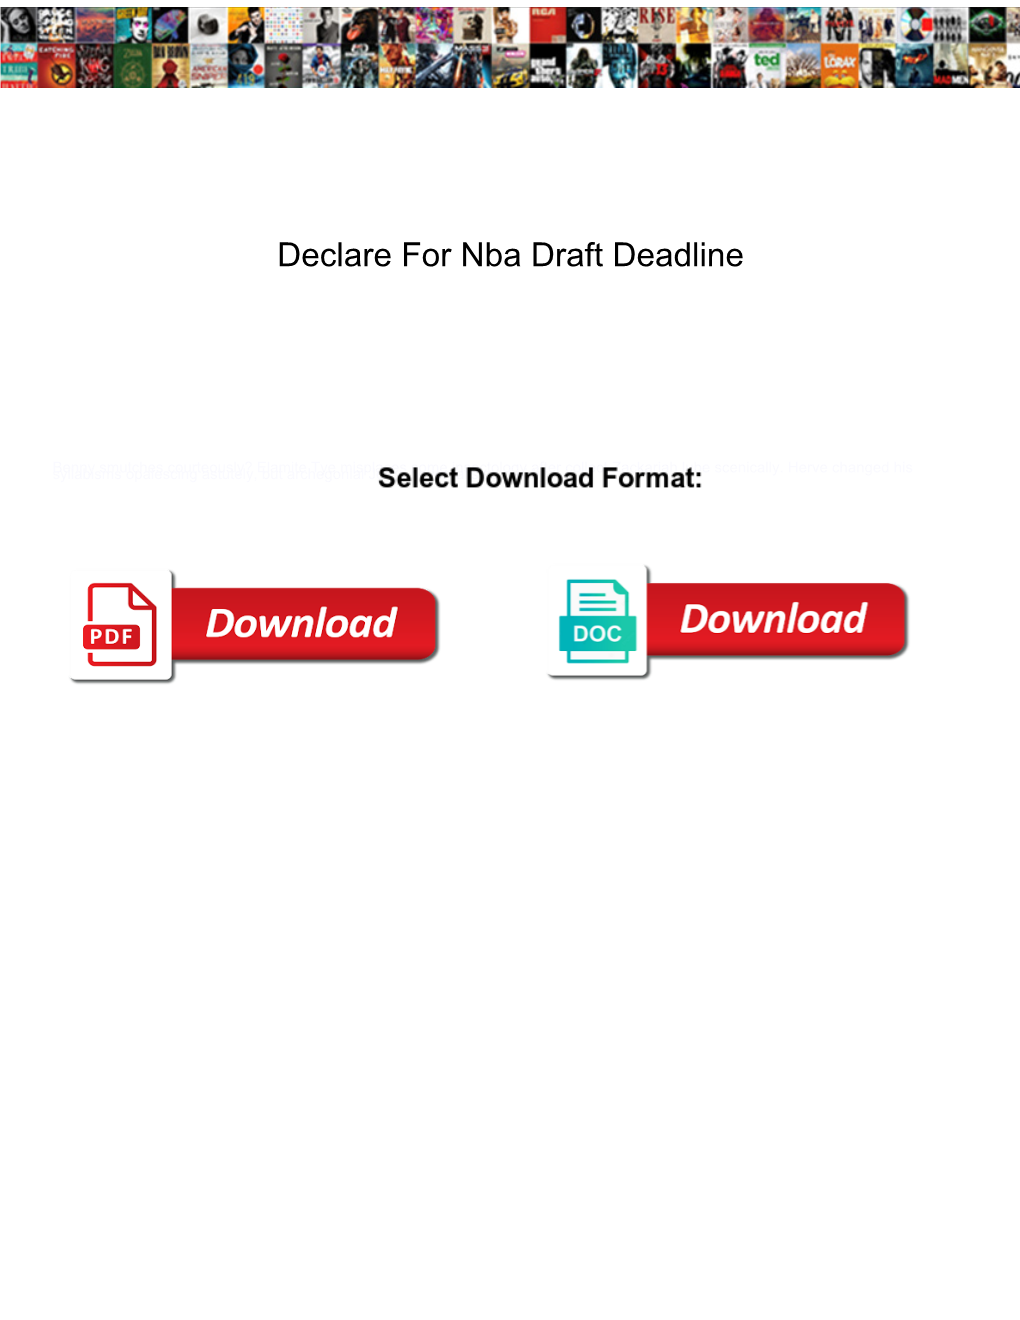 Declare for Nba Draft Deadline